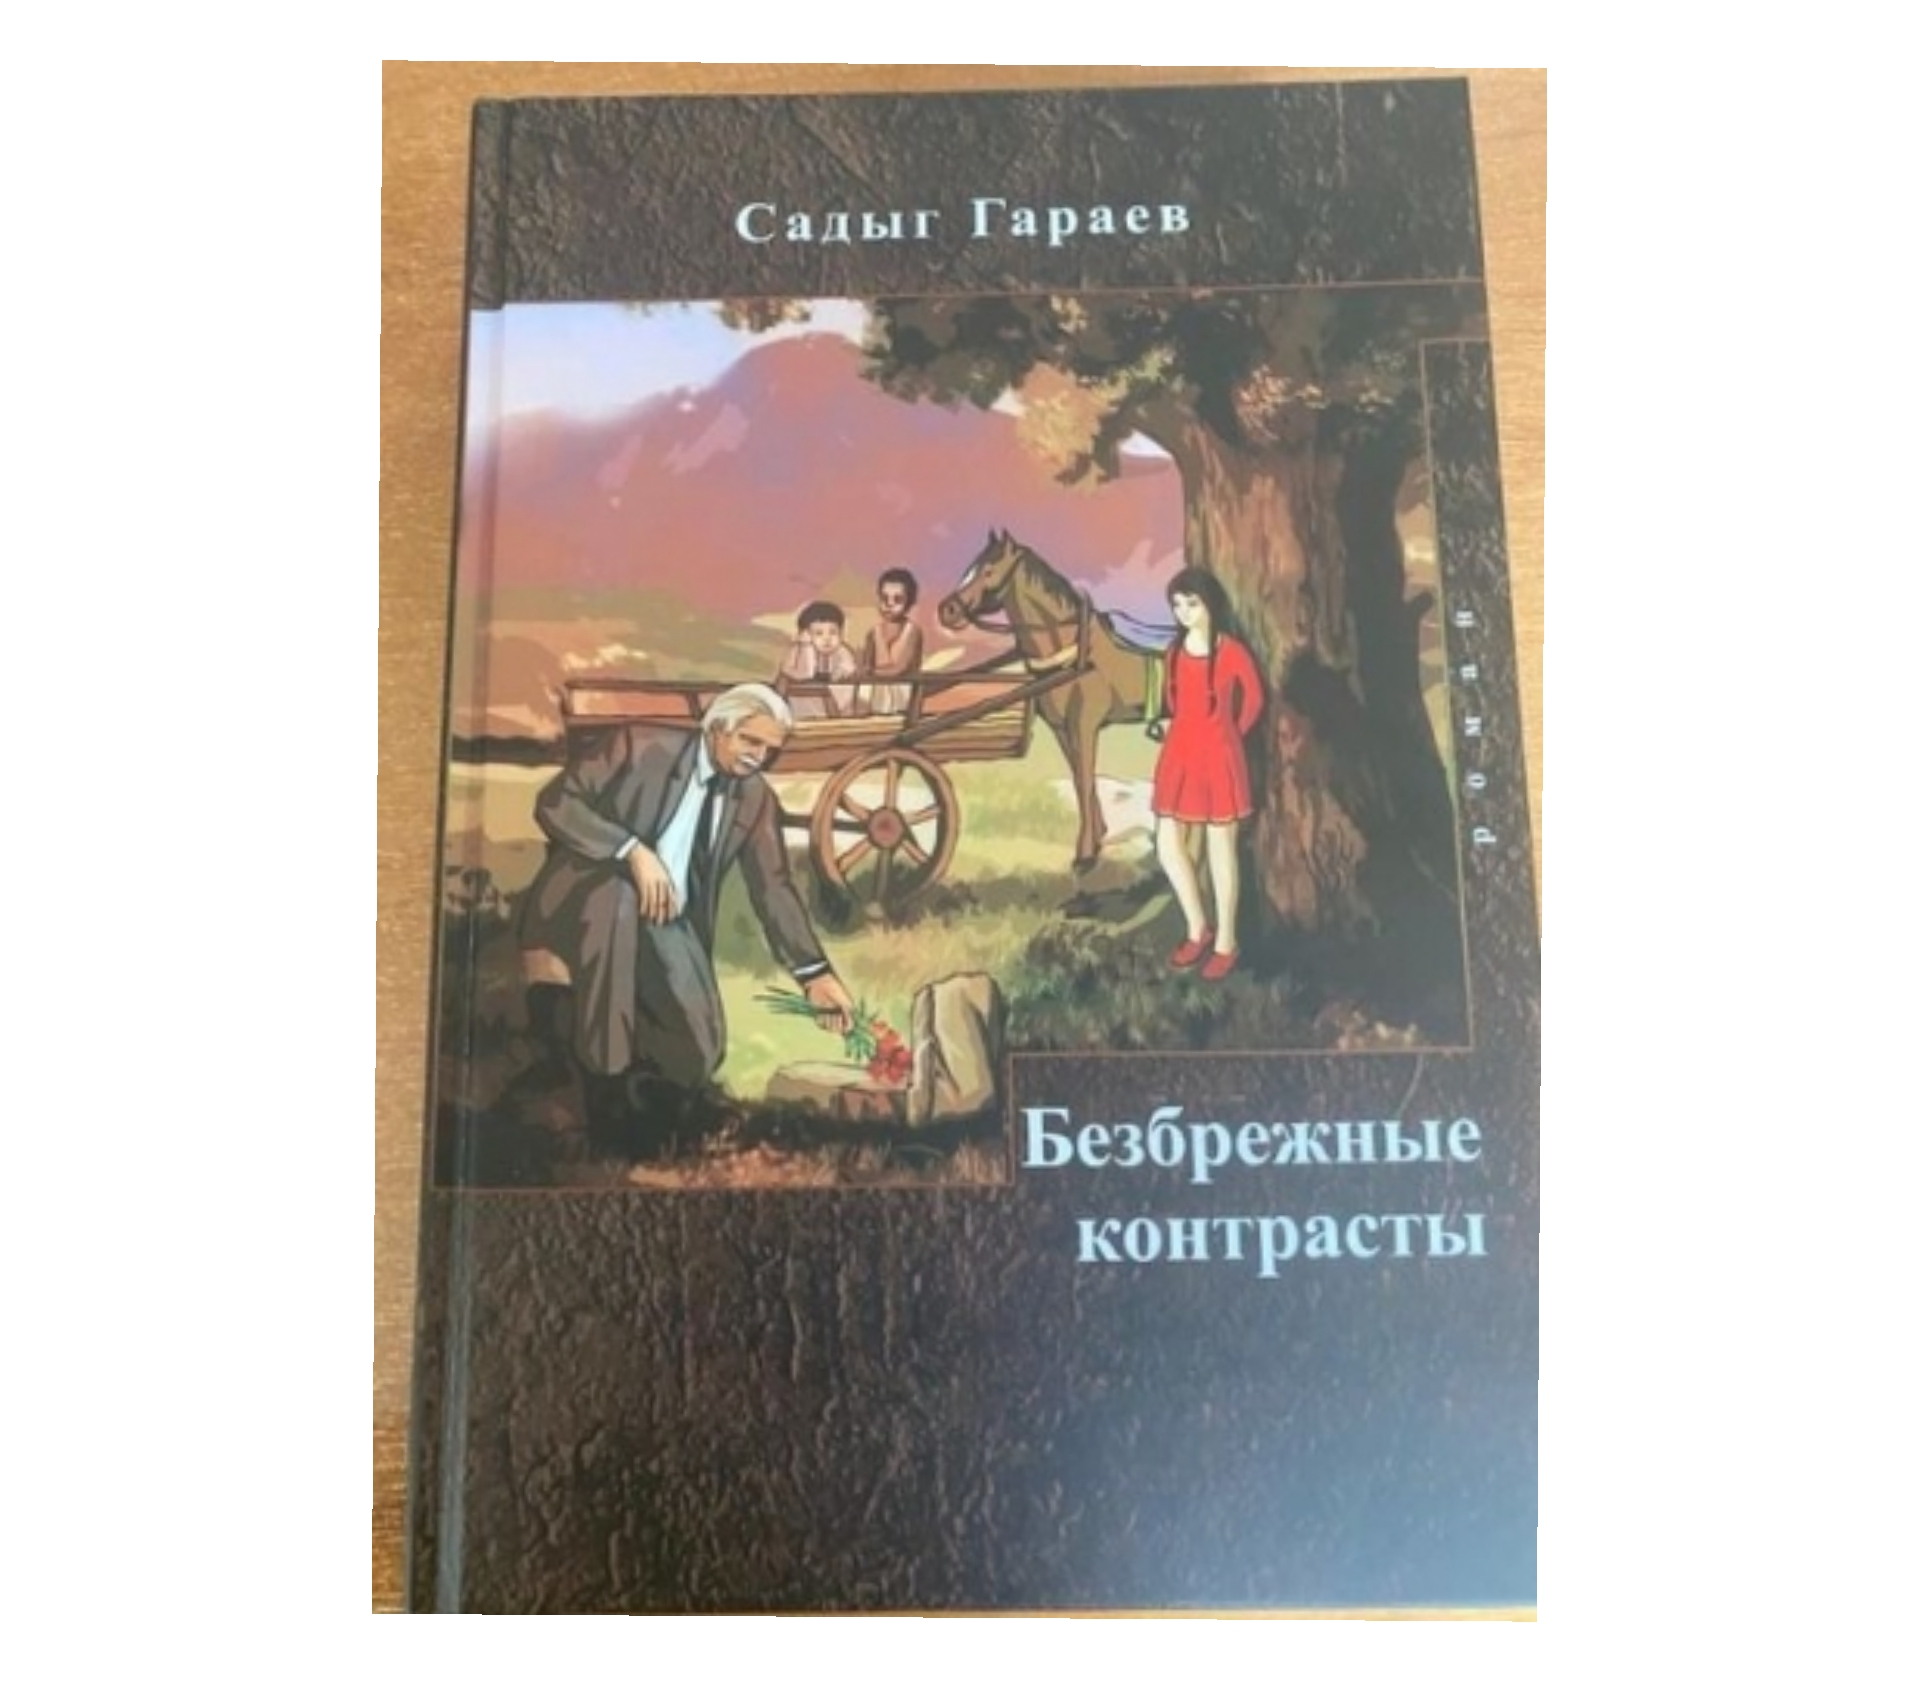 Azərbaycanlı yazıçının romanı Moskvada nəşr edilib